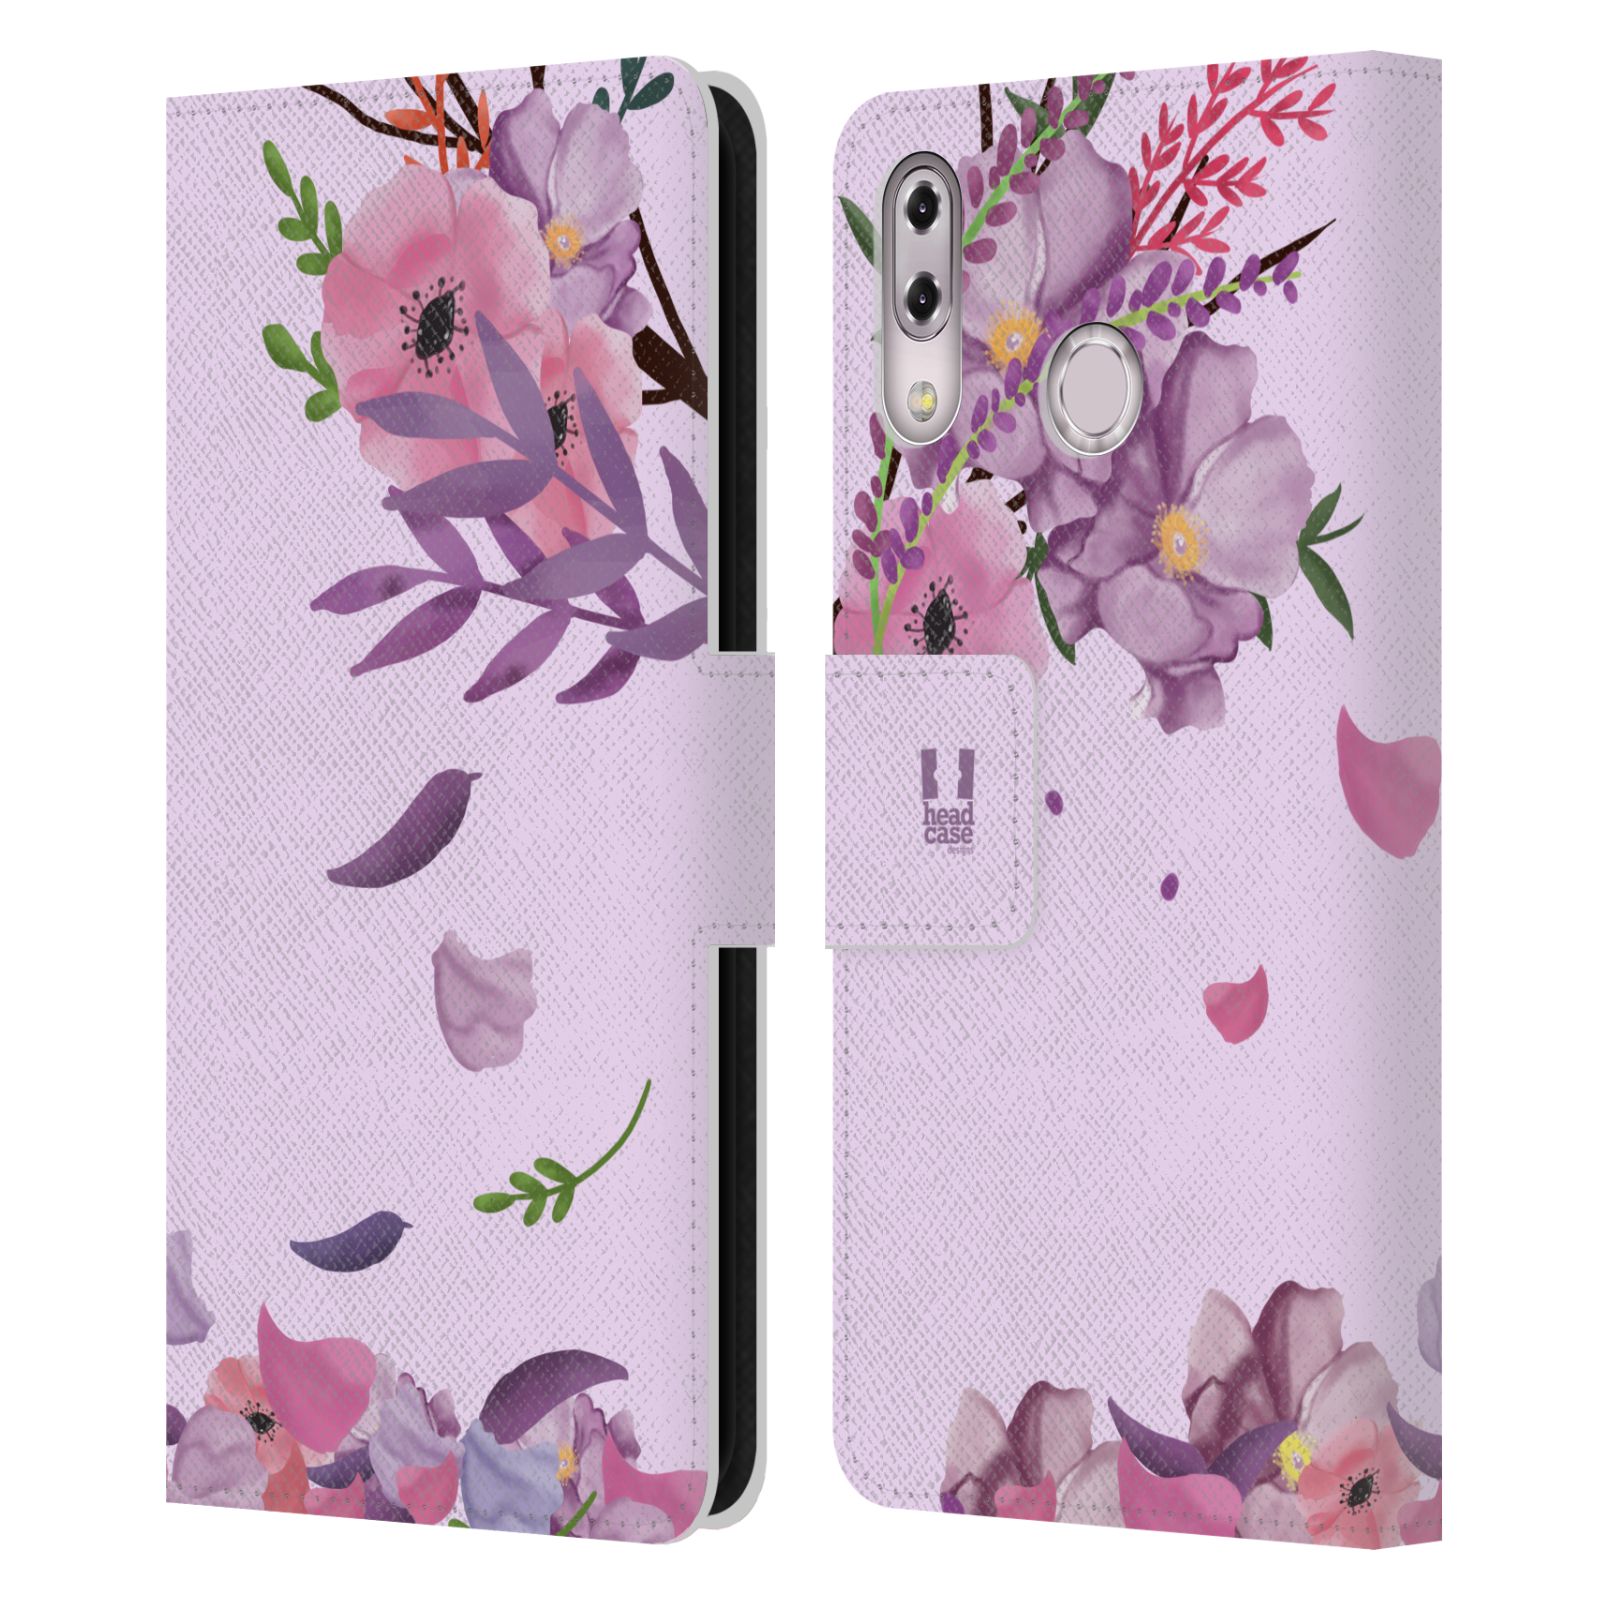 Pouzdro na mobil Asus Zenfone 5z ZS620KL, 5 ZE620KL  - HEAD CASE - Rozkvetlé růže a listy růžová